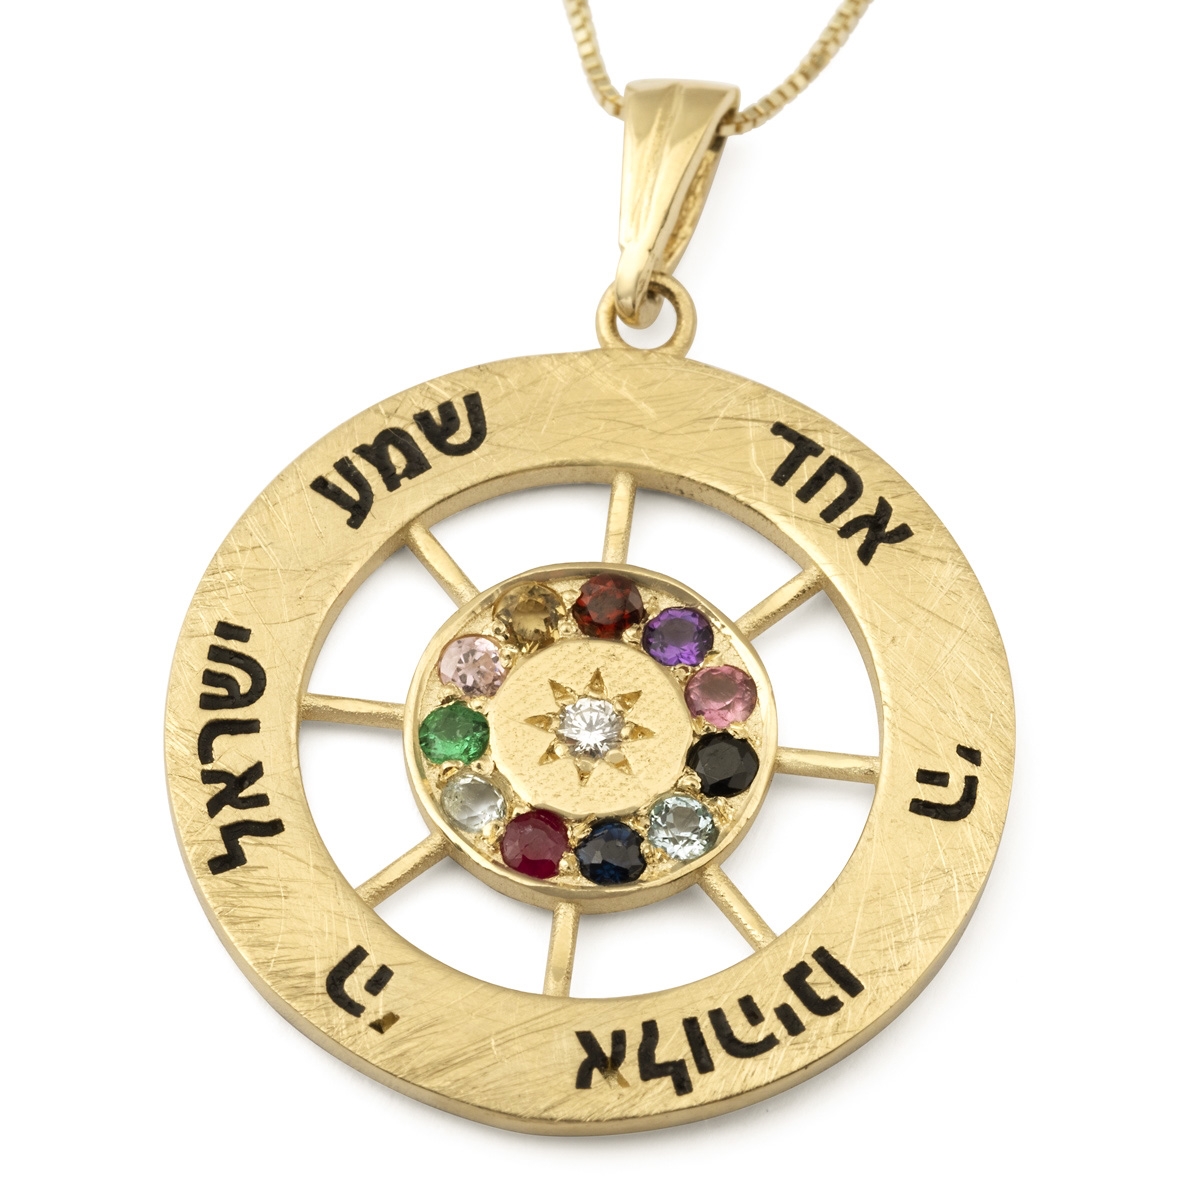 14K Yellow Gold Hoshen Shema Yisrael Pendant Necklace - 1